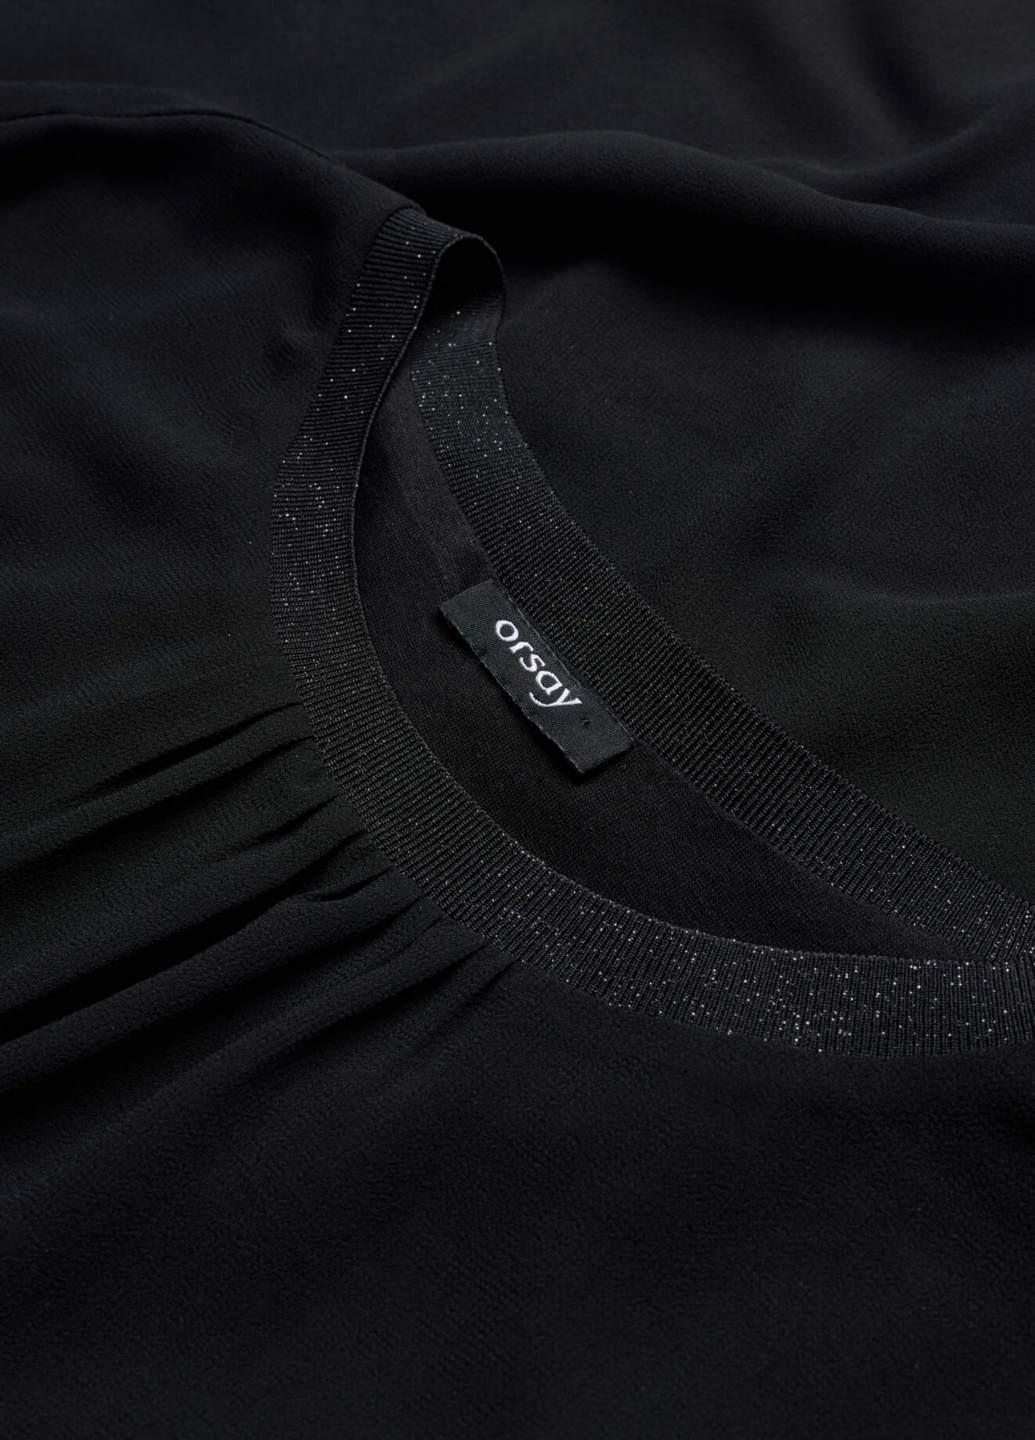 Чёрная блуза Orsay